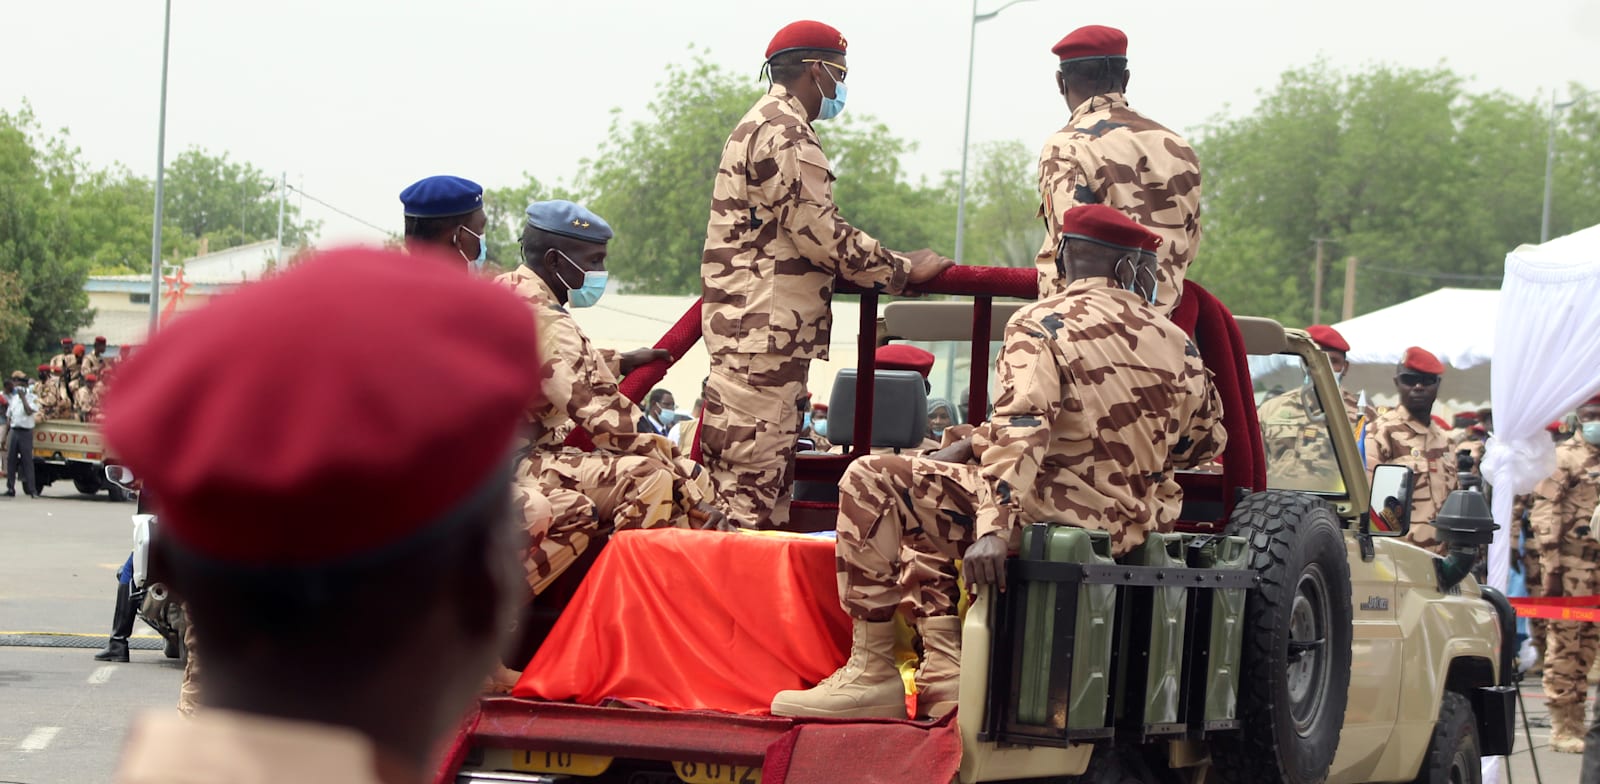 חיילים מובילים את ארונו של נשיא צ'אד המנוח אידריס דבי במהלך הלווייתו הממלכתית בבירה נג'מנה / צילום: Reuters, Oredje Narcisse